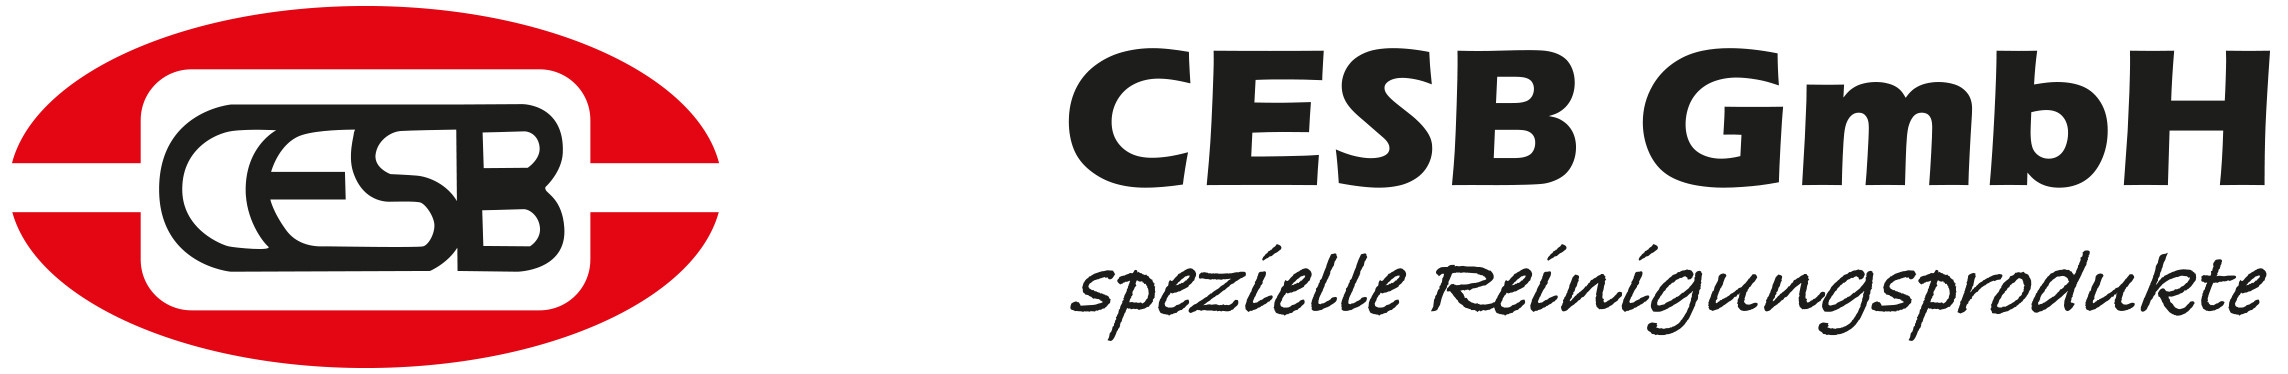 CESB GmbH